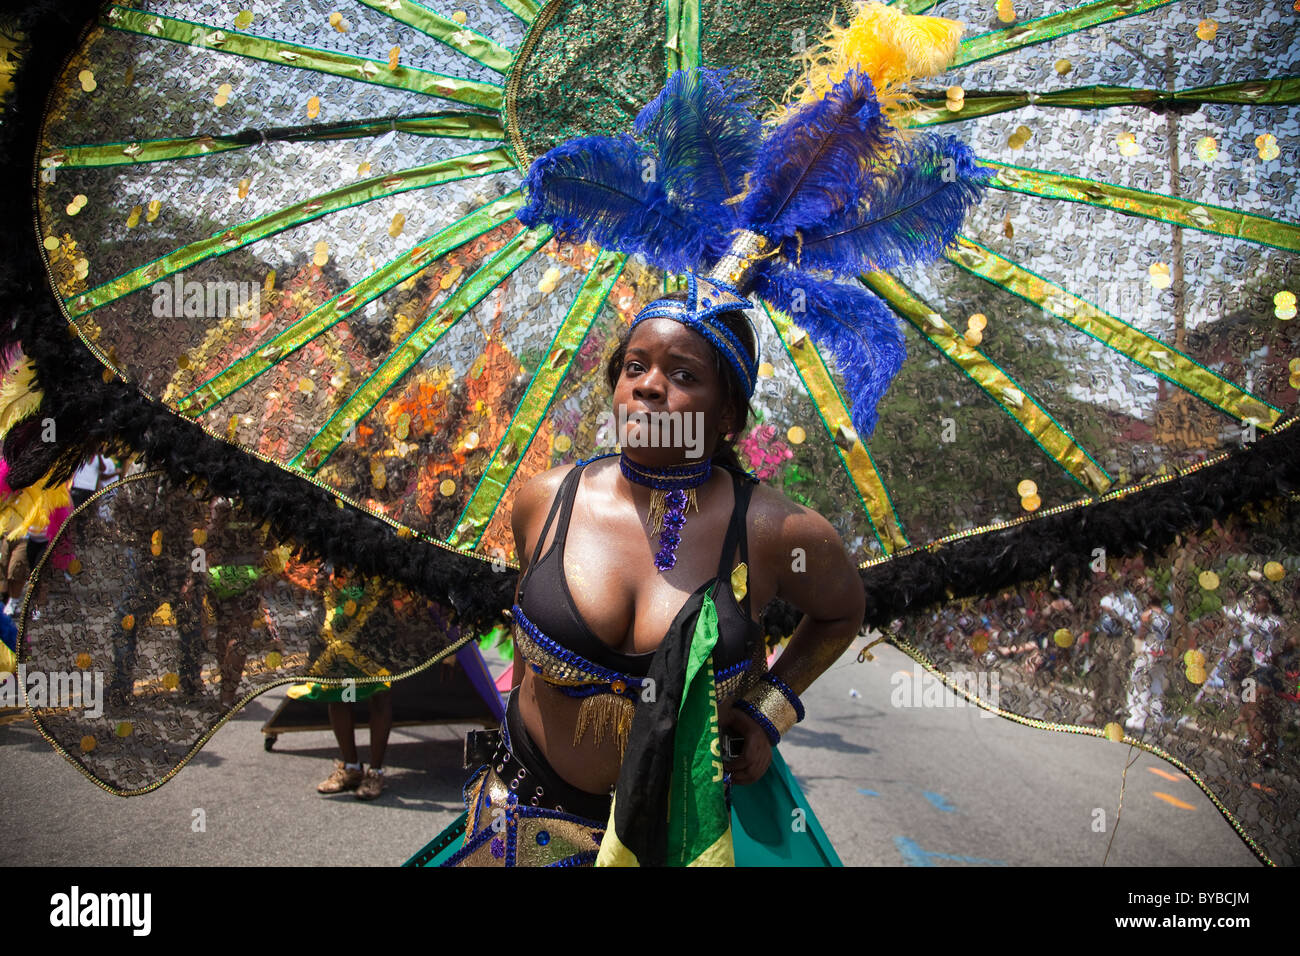 Lancé par un grand défilé dans le style des Caraïbes avec des danseurs, le DC Caribbean Carnival est organisé chaque année à Washington, DC. Banque D'Images